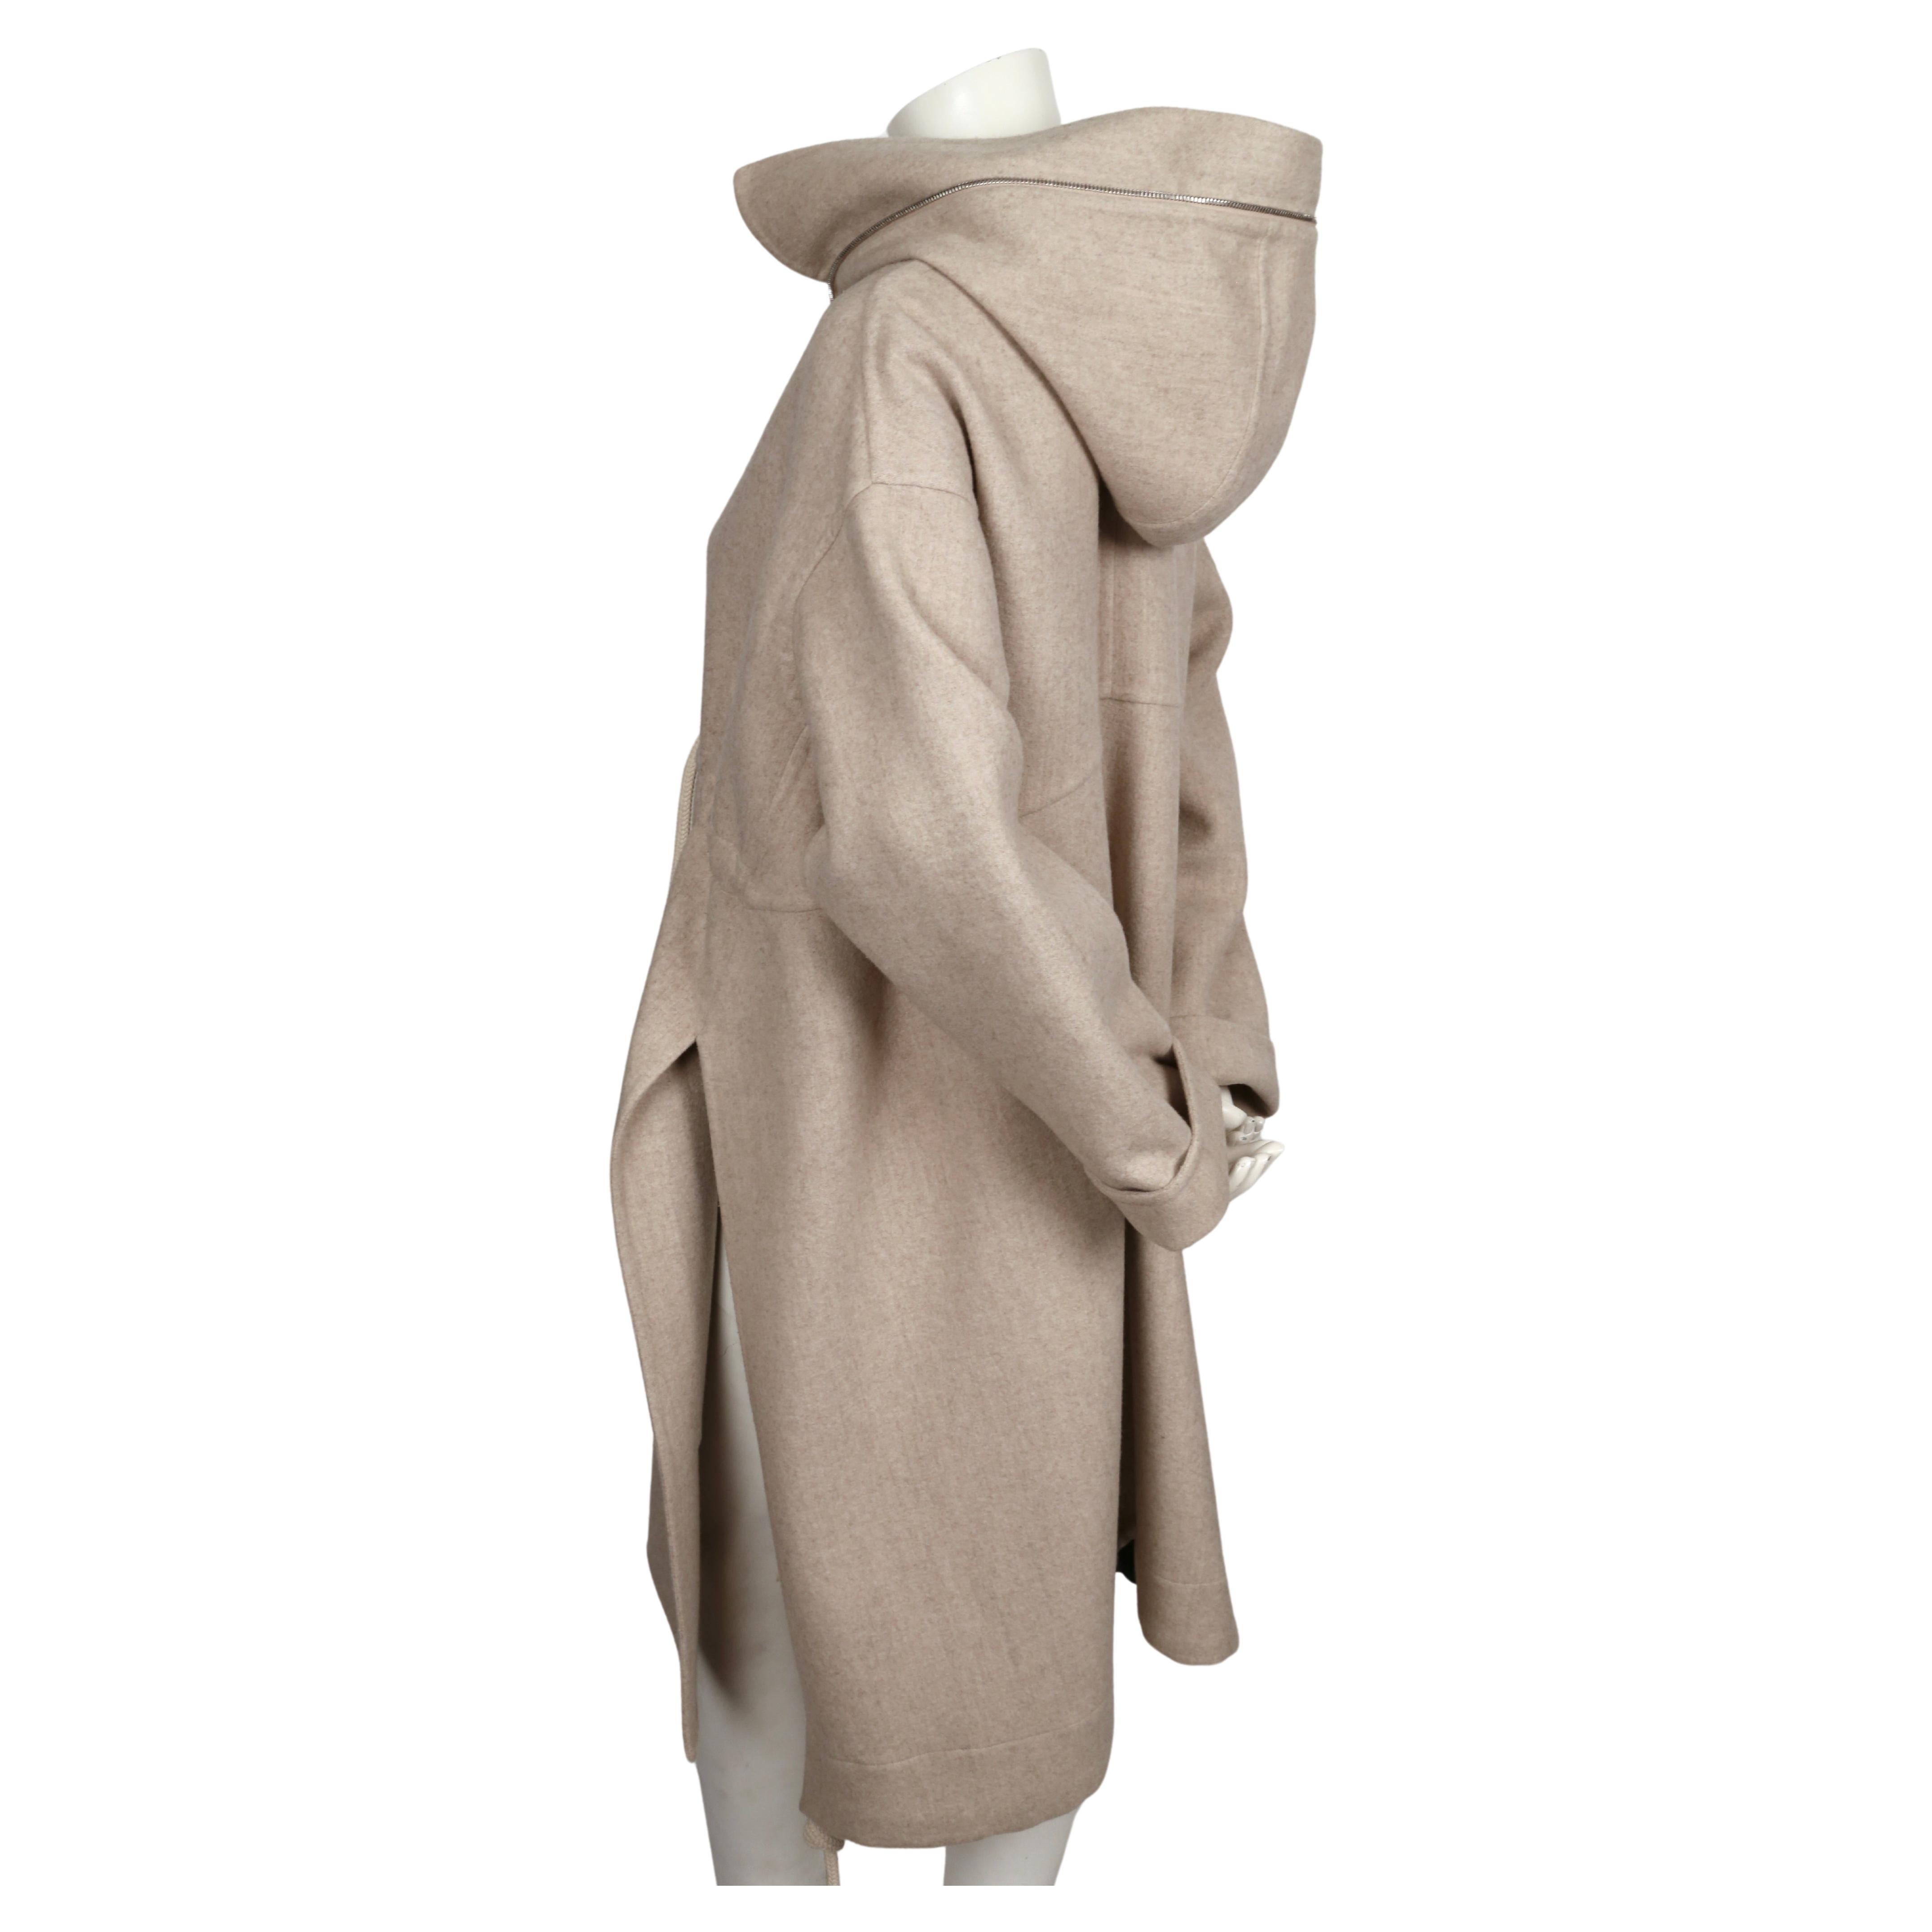 Manteau CÉLINE par PHOEBE PHILO en laine et cachemire couleur grège avec capuche - Resort 2016 Unisexe en vente